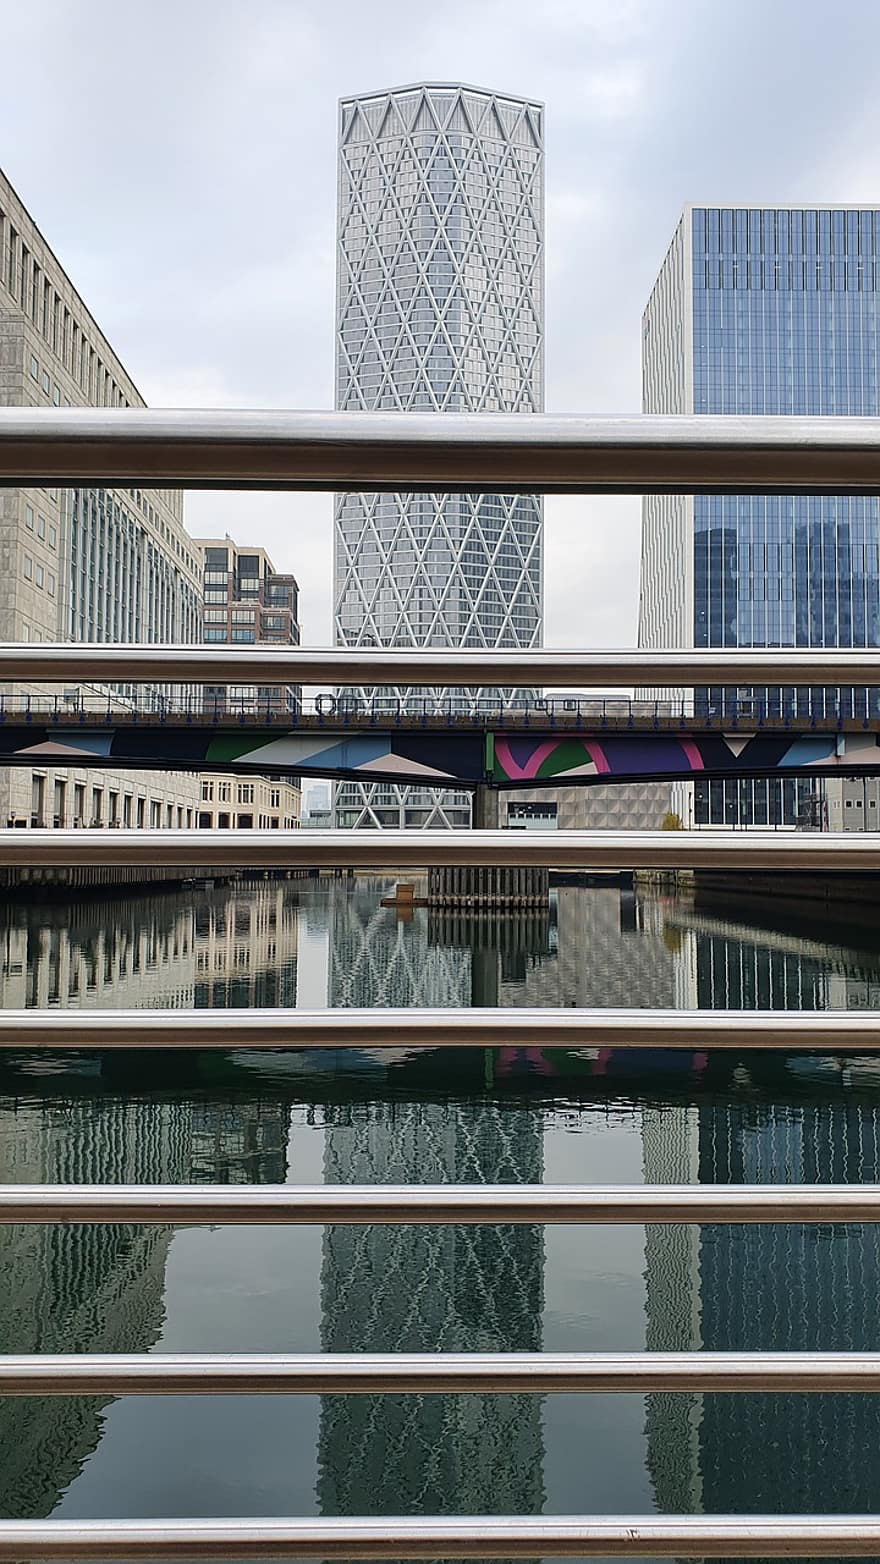 kanaal, rivier-, gebouwen, reflecties, stedelijk, Docklands, modernisme, kanarie-werf, architectuur